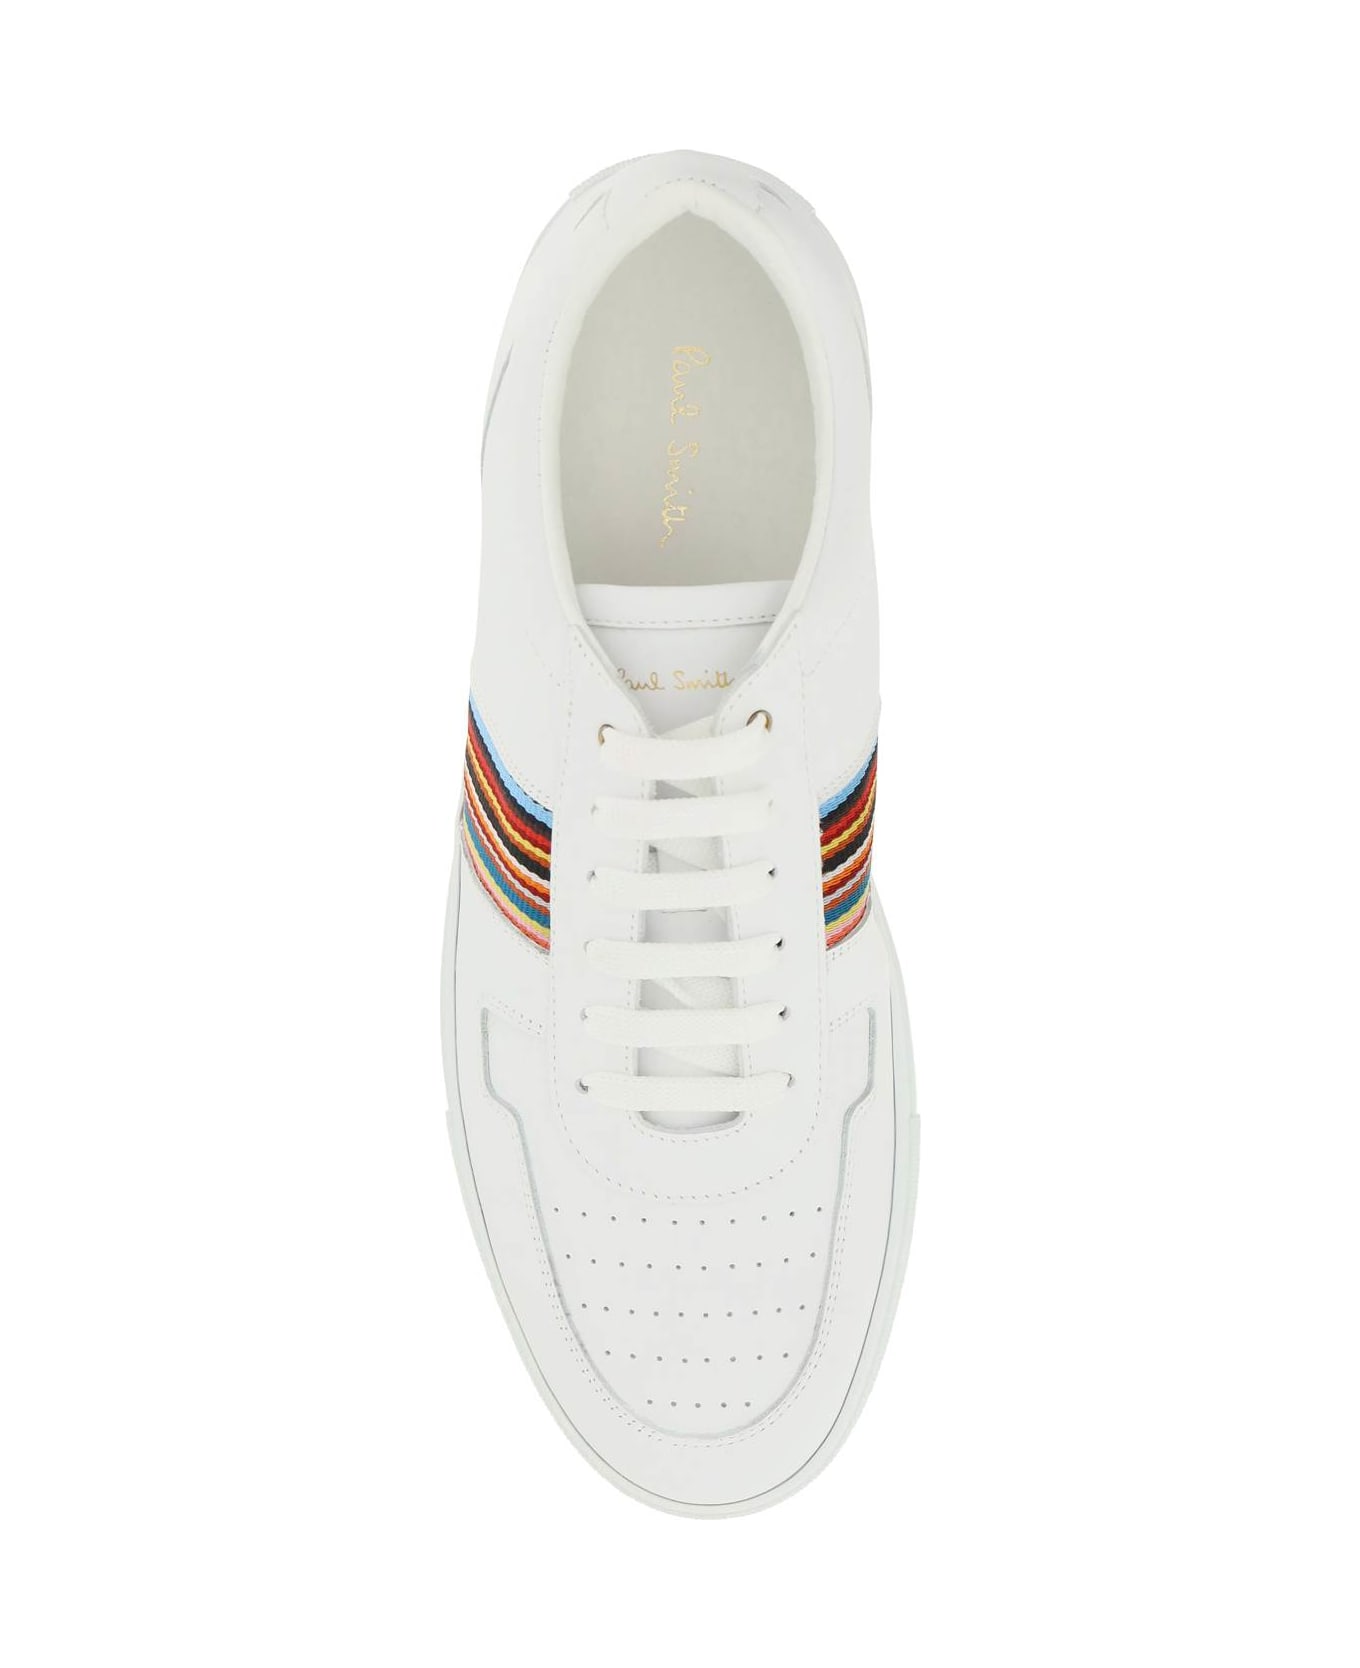 Paul Smith Fermi Sneakers - WHITE (White)